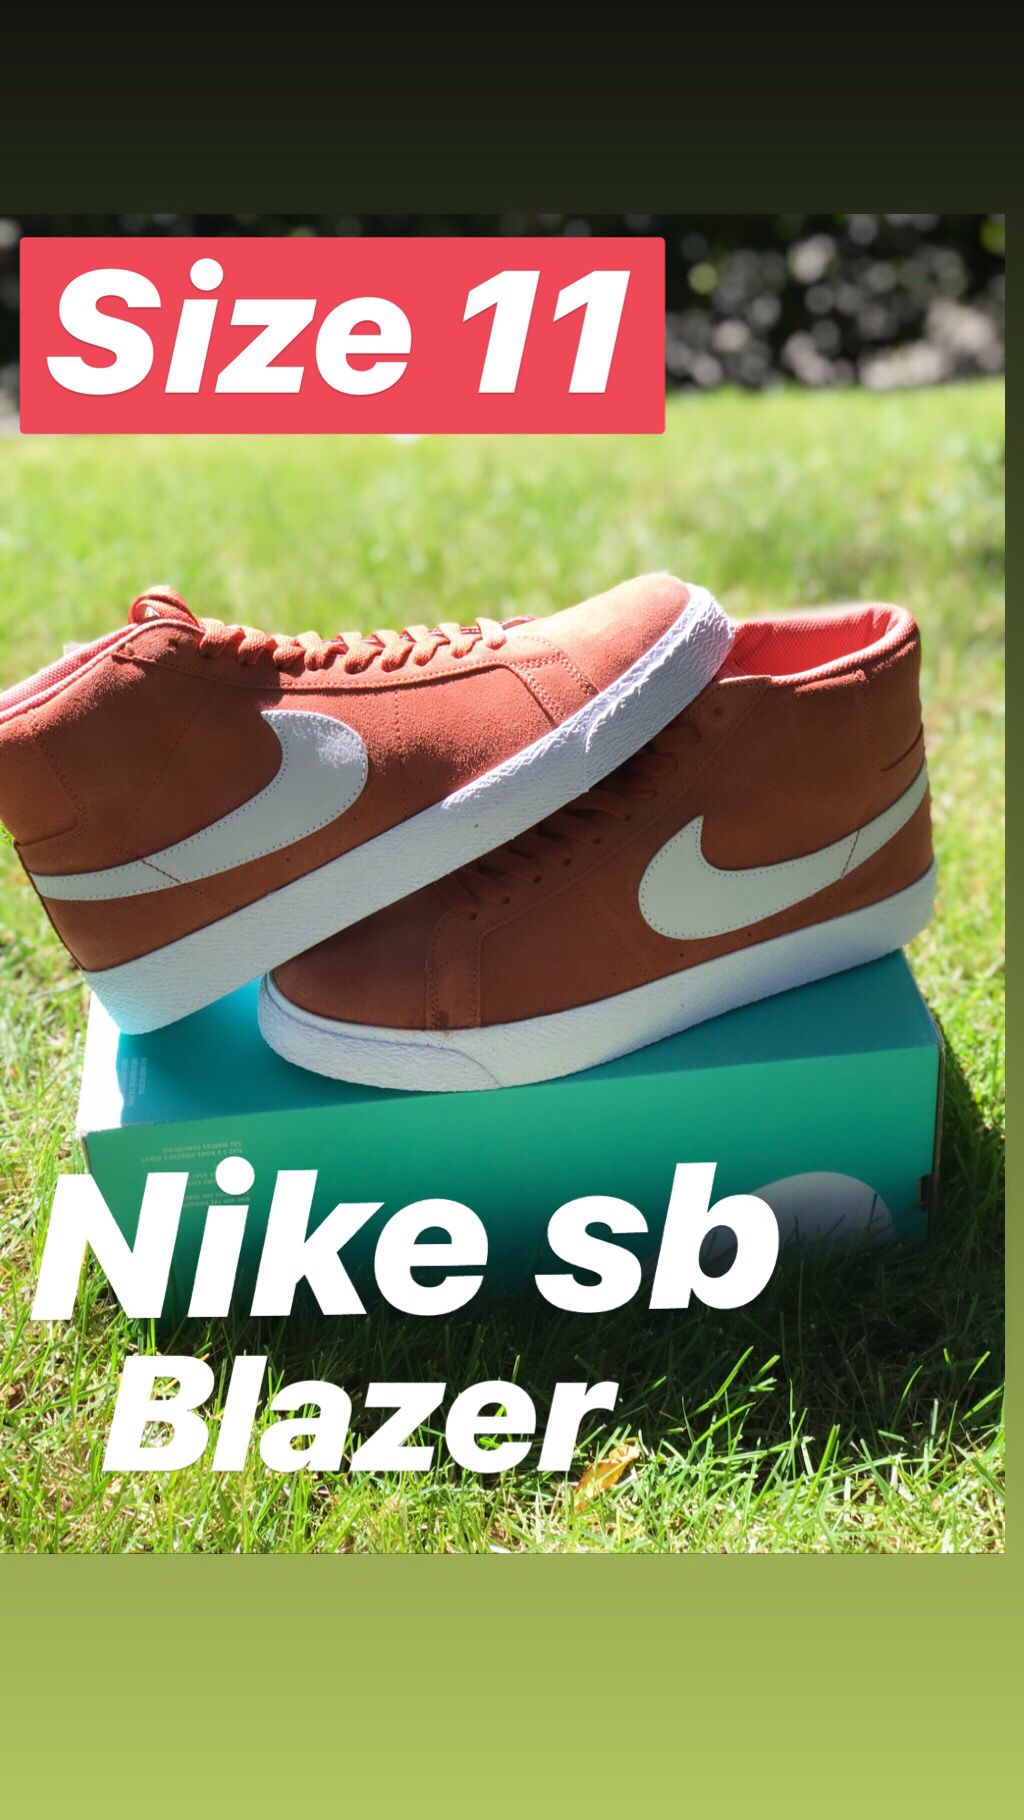 New Nike sb shoes blazers size 11